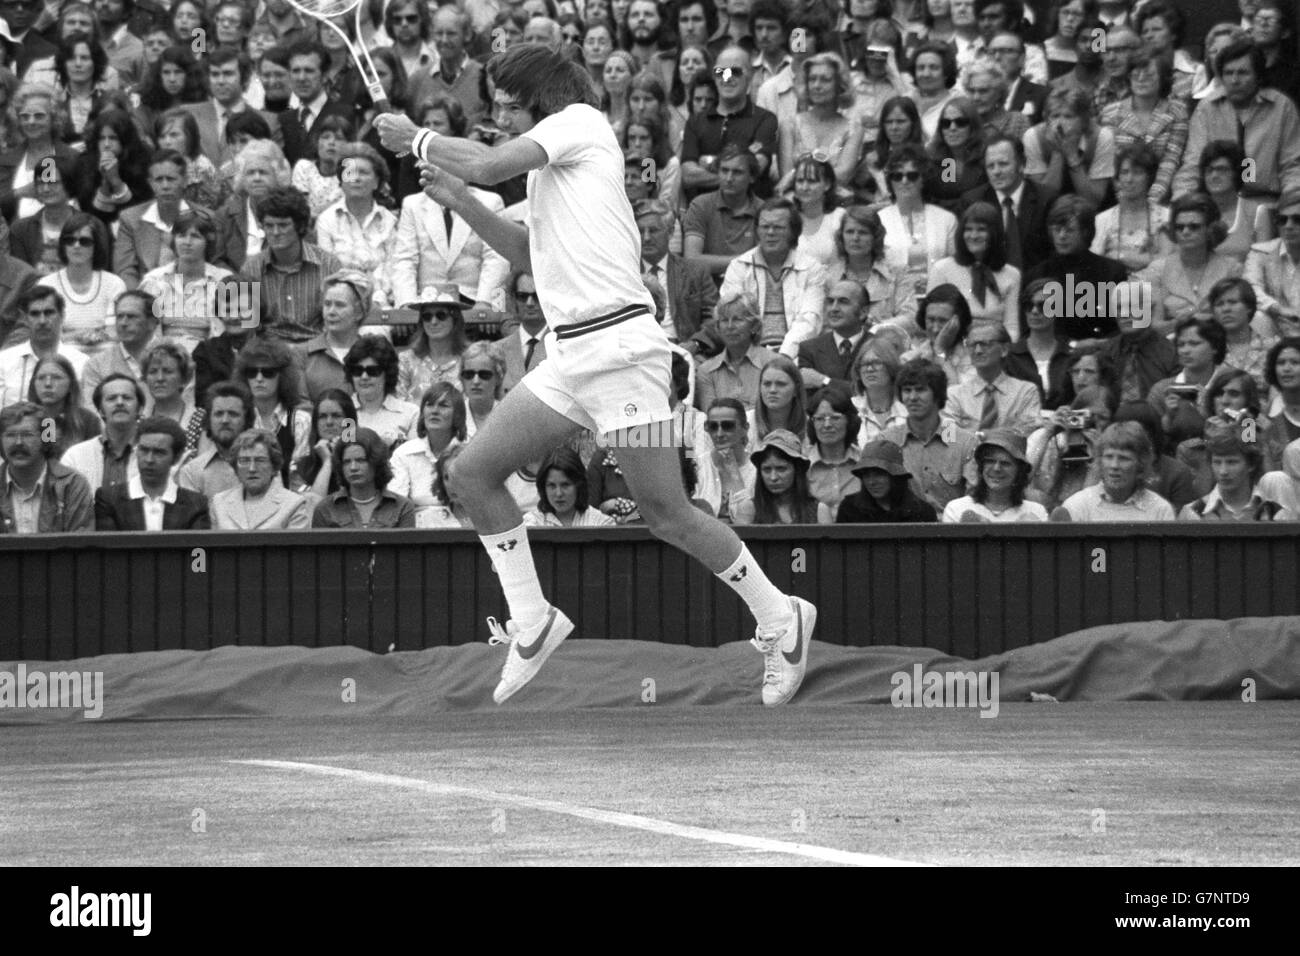 Tennis - Wimbledon - Finale der Herreneinzel - Jimmy Connors gegen Arthur Ashe - Center Court. Der Titelverteidiger Jimmy Connors im Spiel während des Einzelwettbewerbs der Männer in Wimbledon. Stockfoto